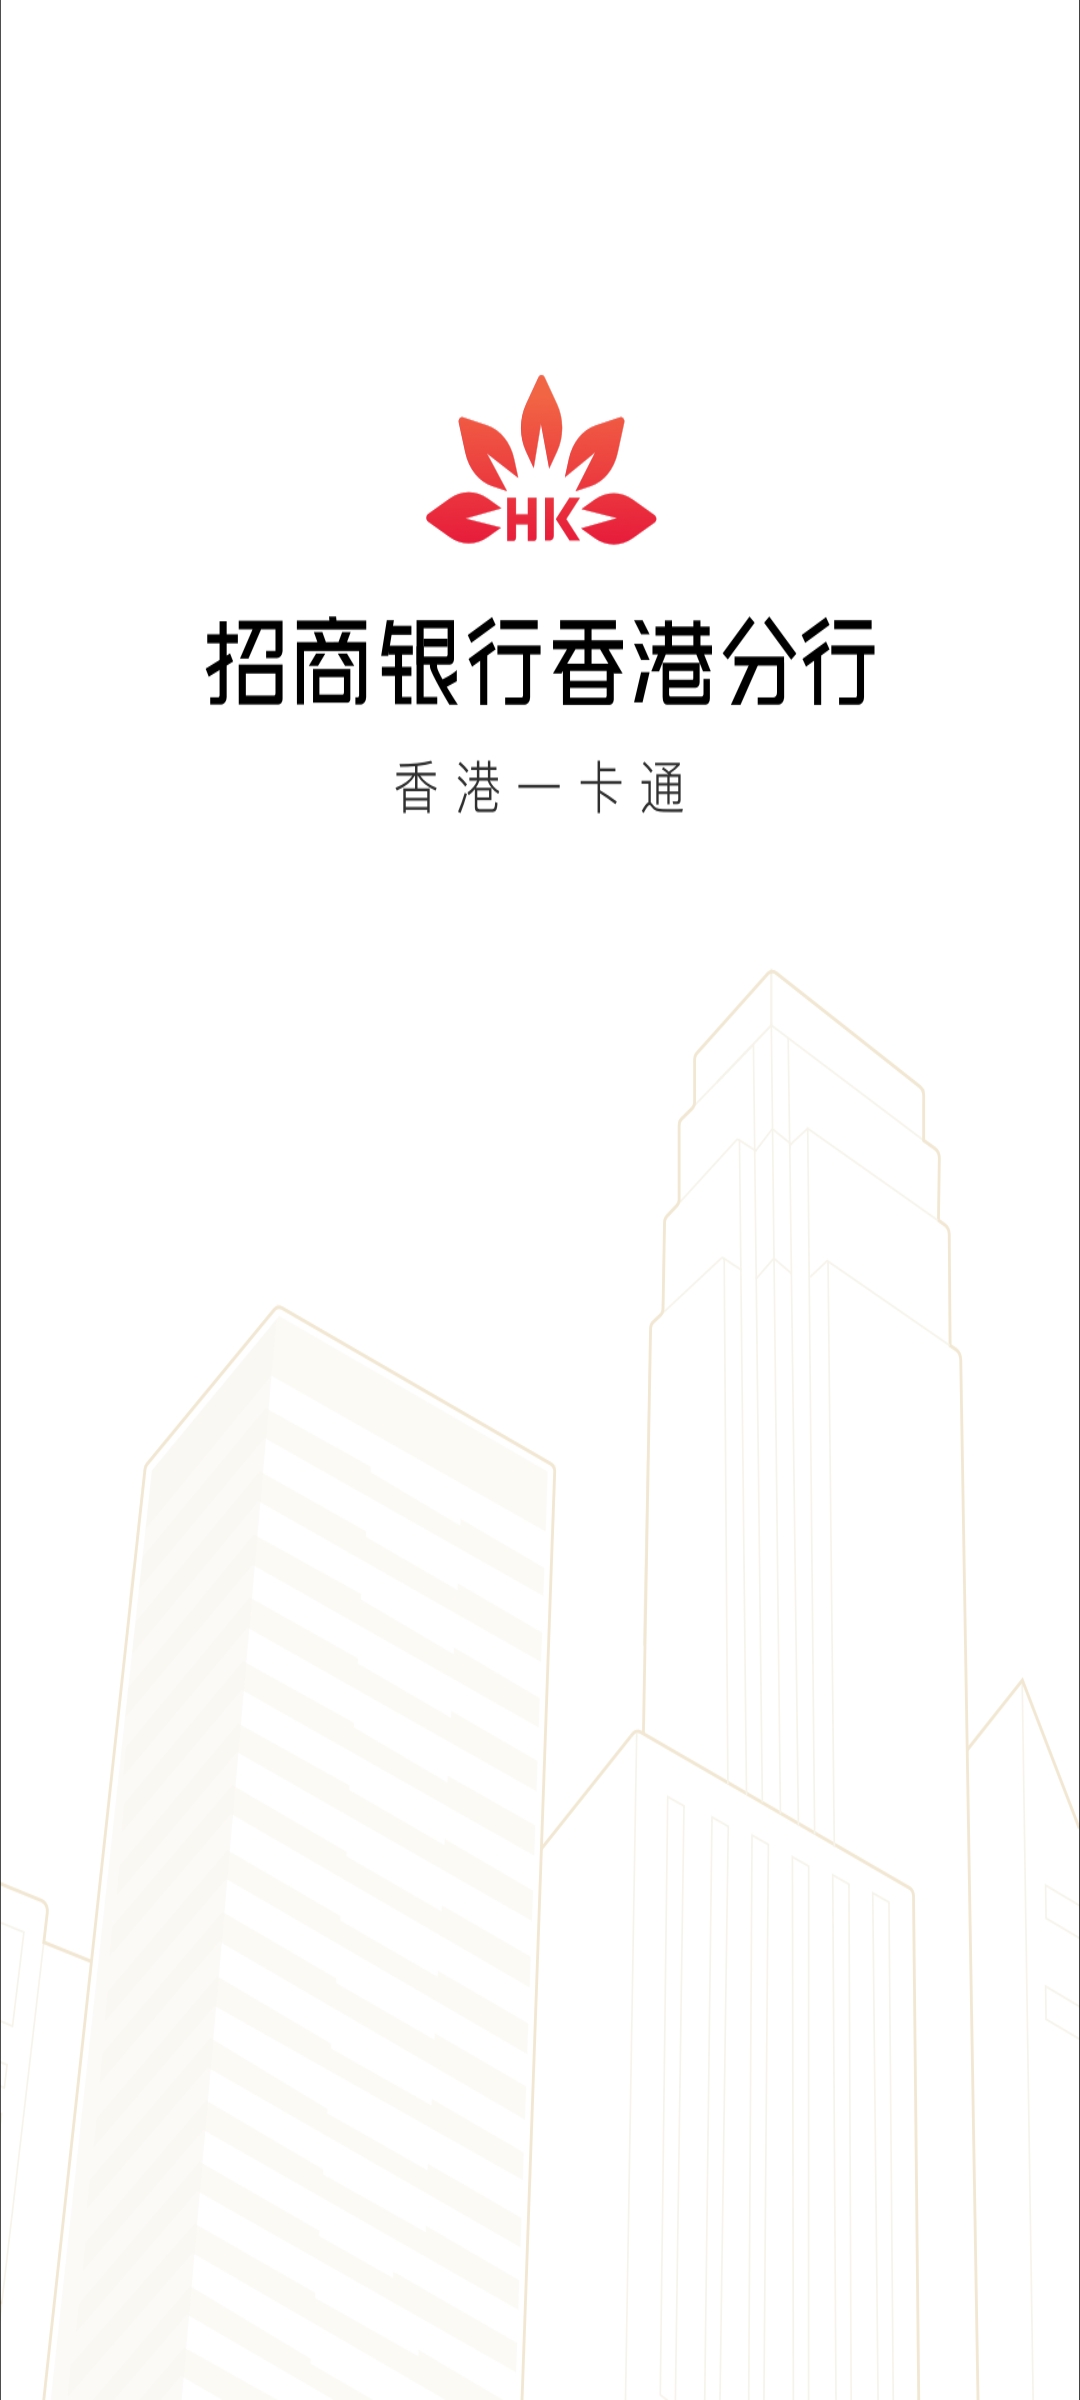 招商银行香港分行app